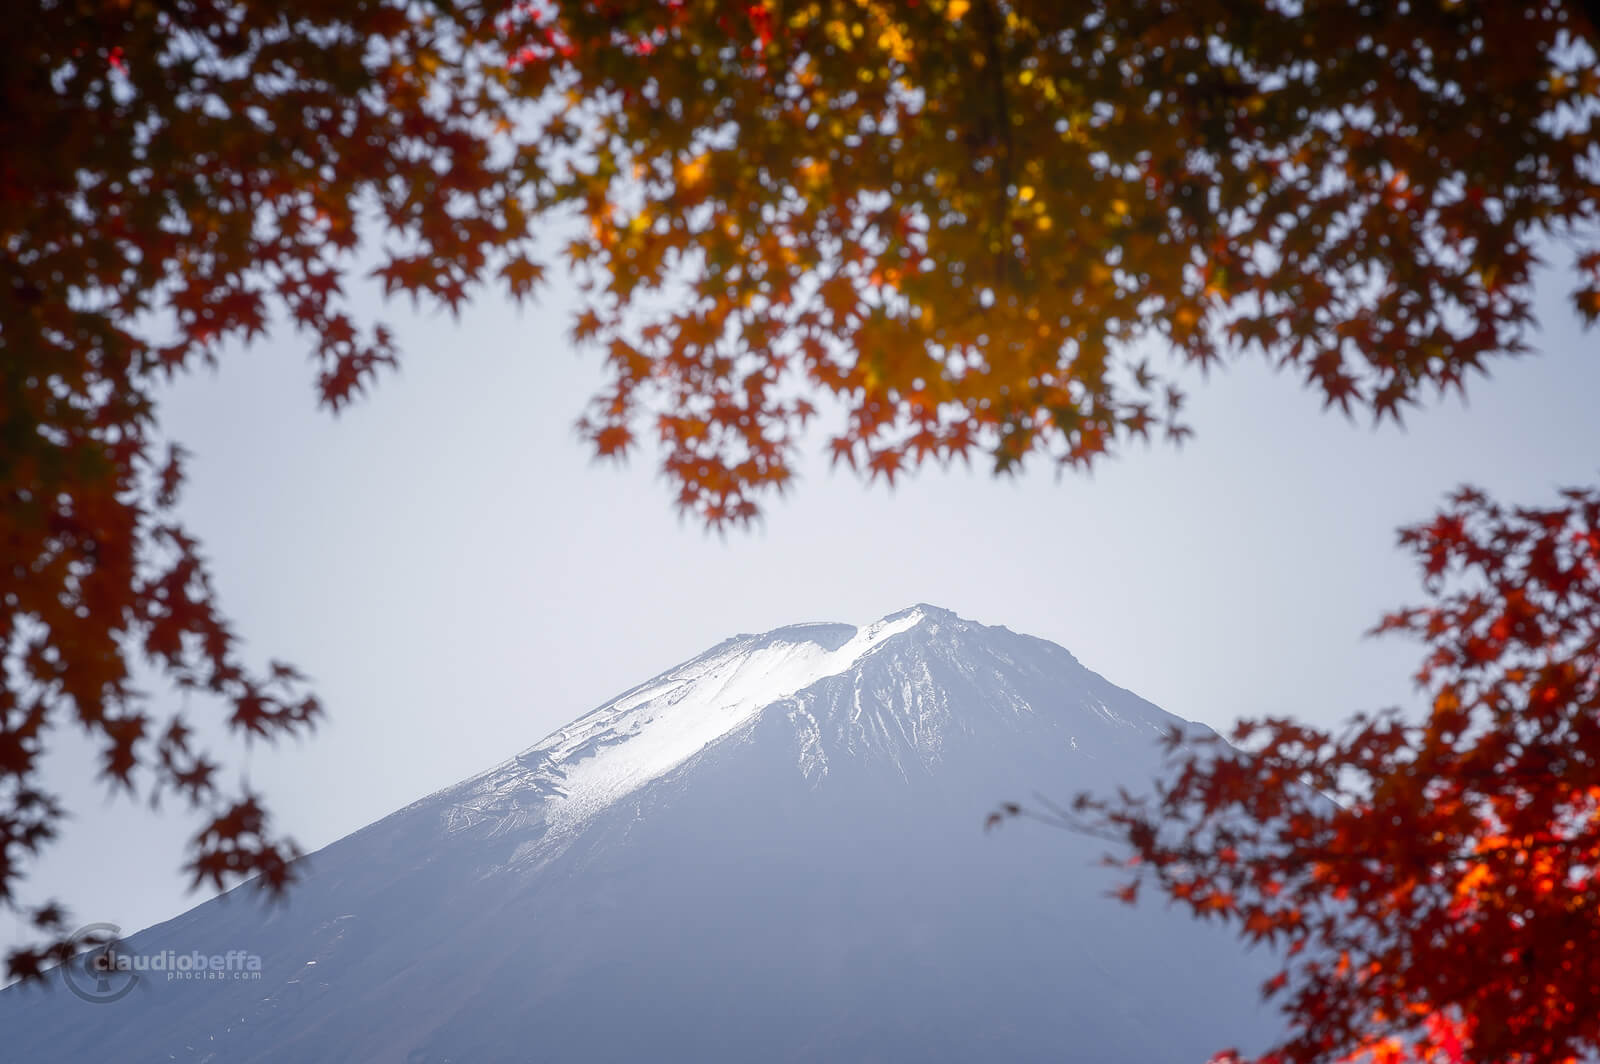 Mount Fuji, Fuji, Japan, Chubu, autumn, fall, momiji, Kawaguchiko, red, snow, Fuji peak, travel, phoclab